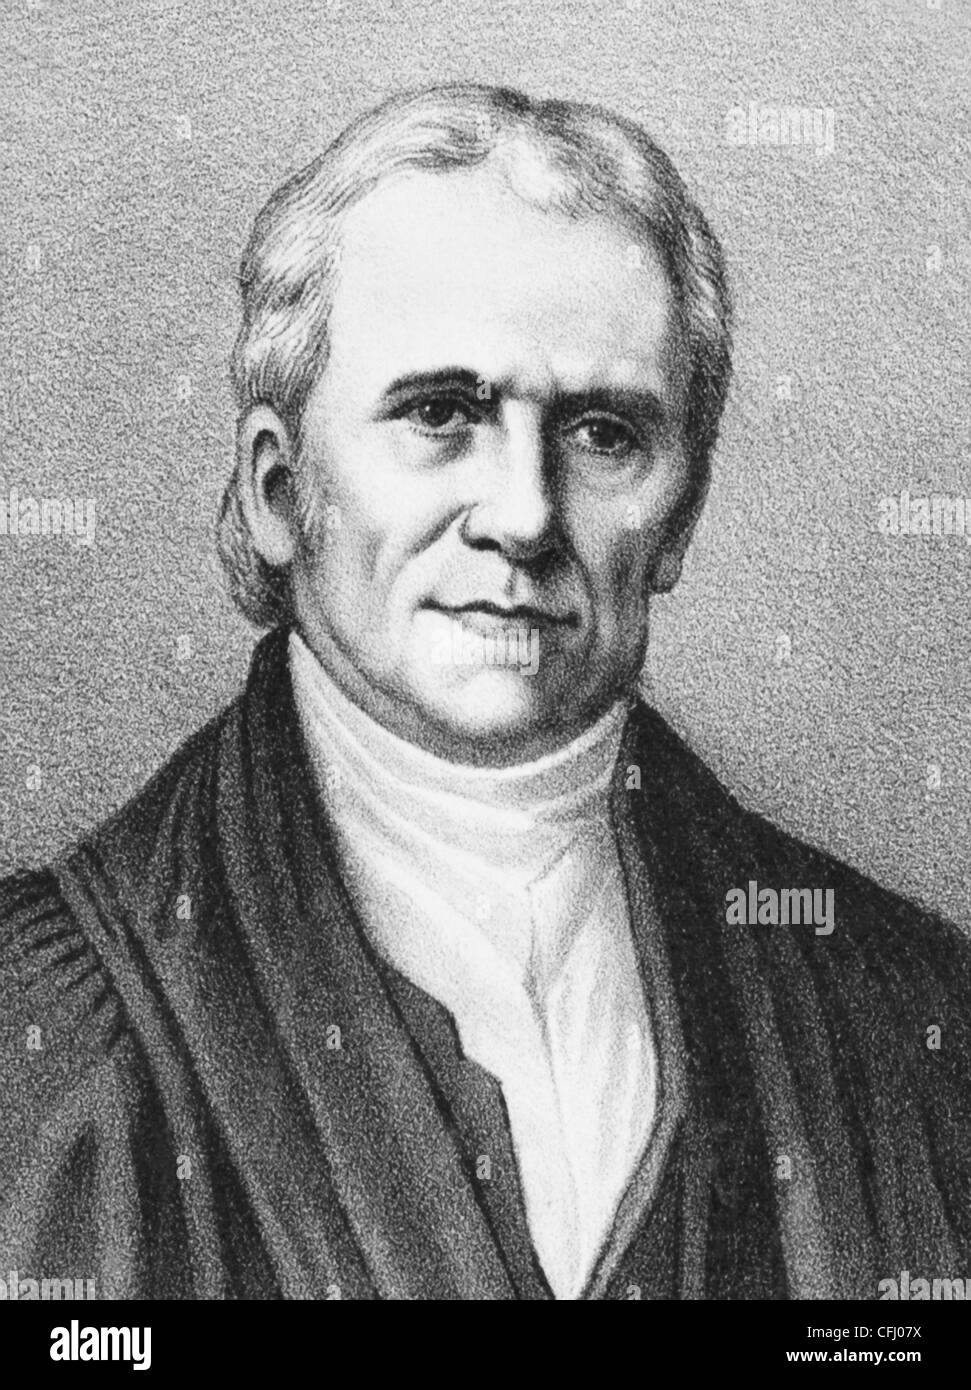 Vintage Portrait imprime de estadista estadounidense y el juez John Marshall (1755 - 1835) - el cuarto jefe de Justicia estadounidense (1801 - 1835). Foto de stock